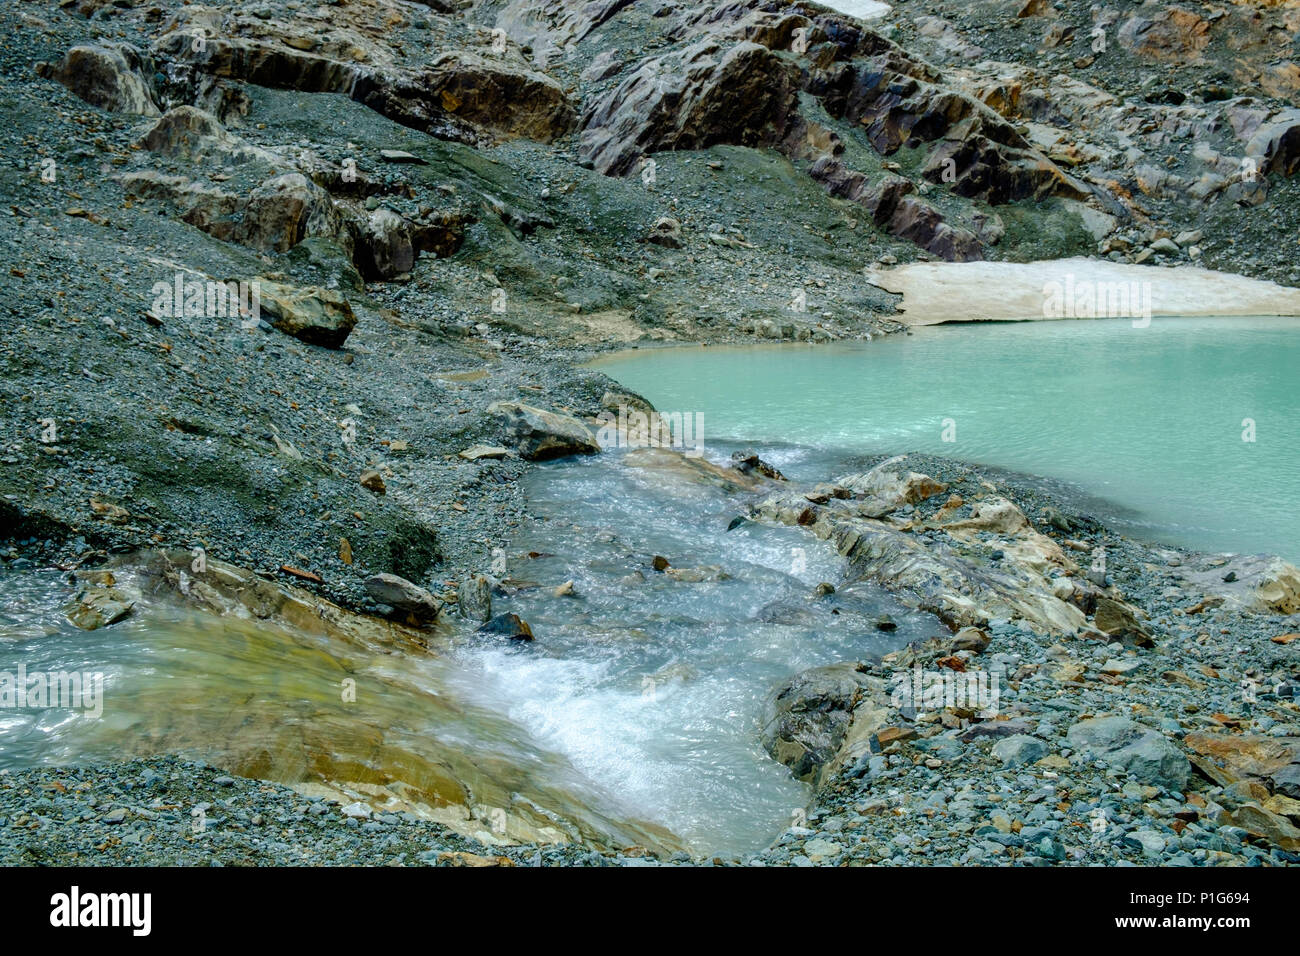 Gletscherschmelzwasser steigt in kleinen Bächen in die Felsen hinab und durchzieht kleine Lagunen. Diese wunderbare Szene liegt hinter 'Laguna de los Témpanos'. Stockfoto